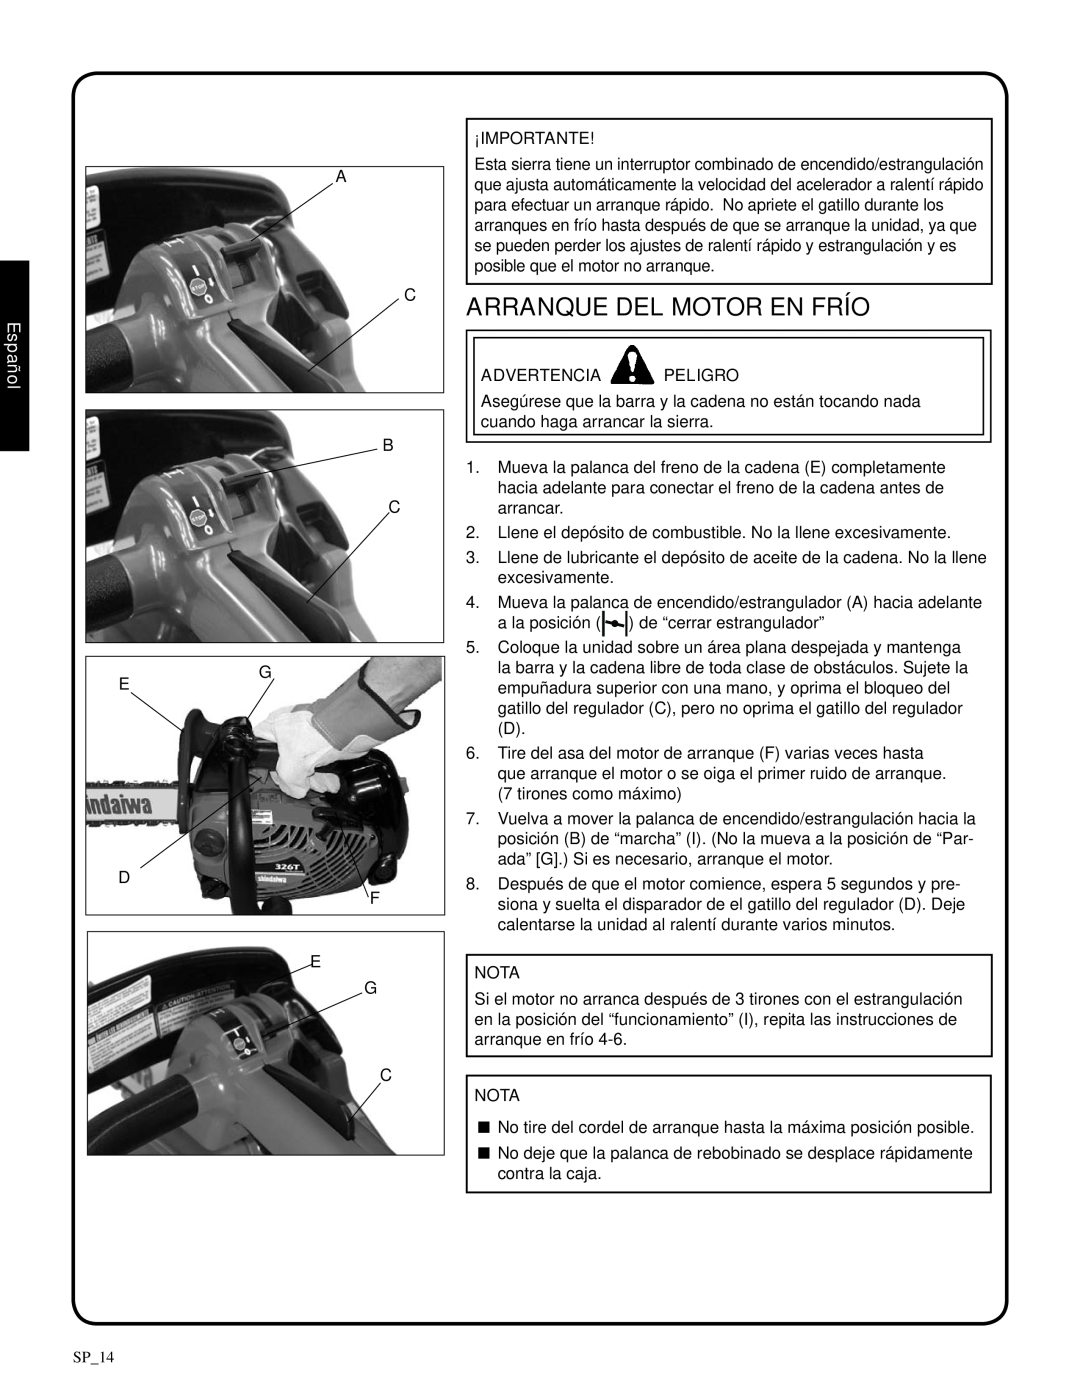 Shindaiwa 82085, 326T manual arranque del motor en frío, ¡Importante, Español, Advertencia Peligro, Nota 